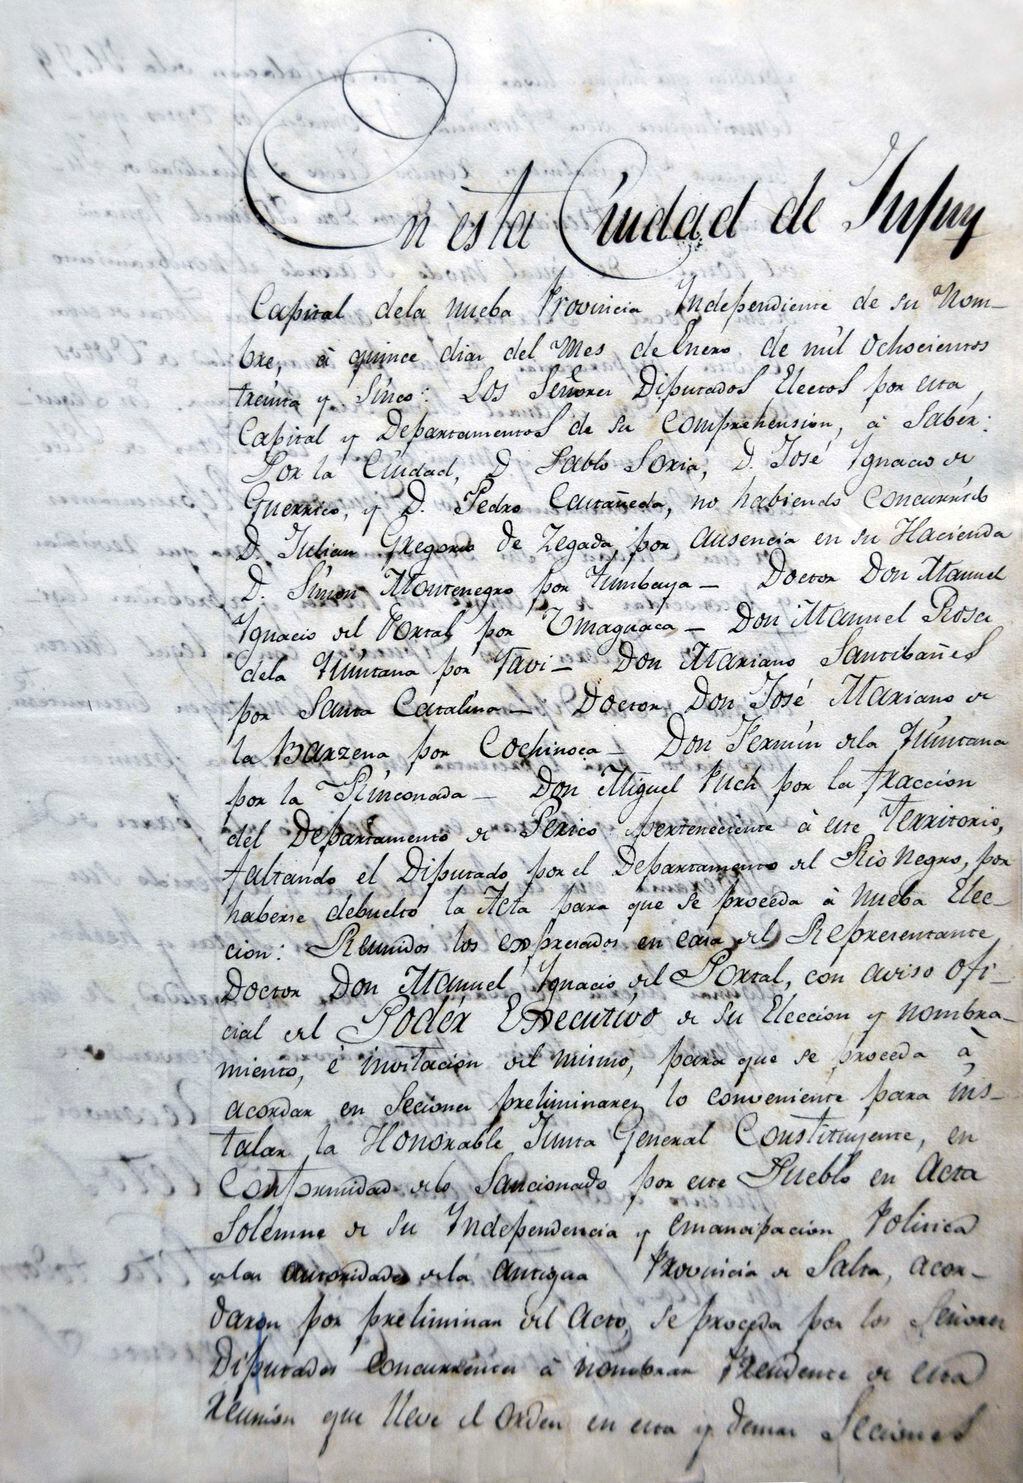 Acta de creación de la Honorable Junta General Constituyente de Jujuy, fechada el 15 de enero de 1835.